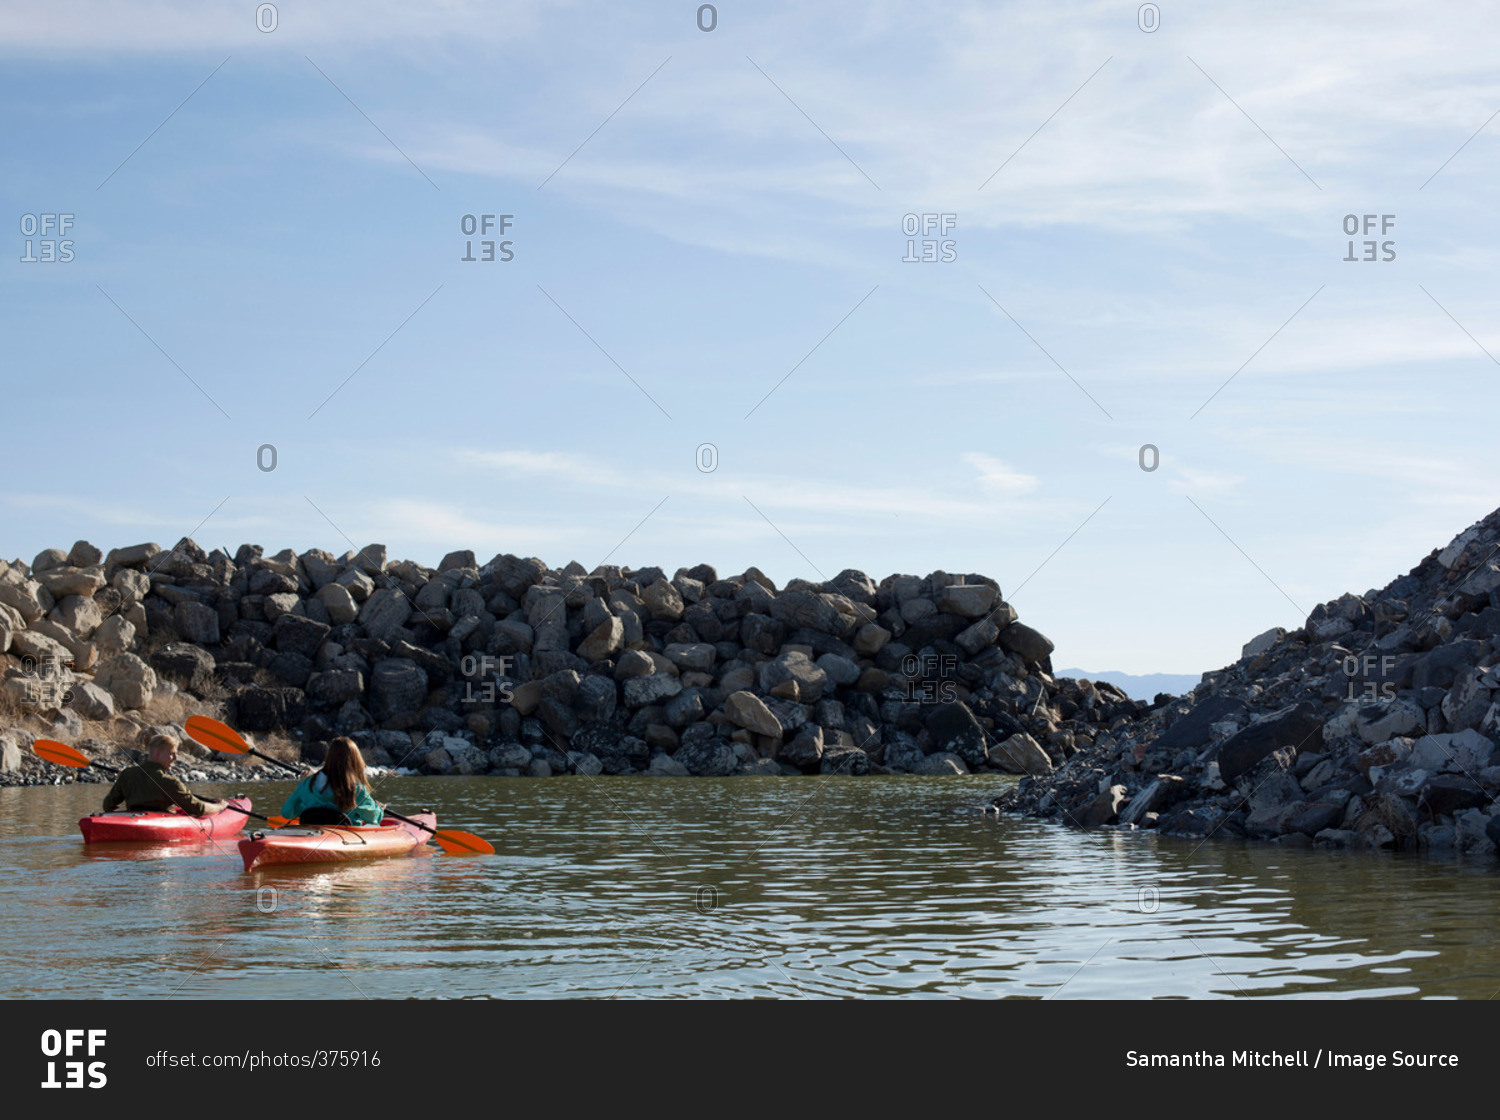 Rear view of kayakers sitting on water in kayaks facing rocks, Great Salt Lake, Utah, USA